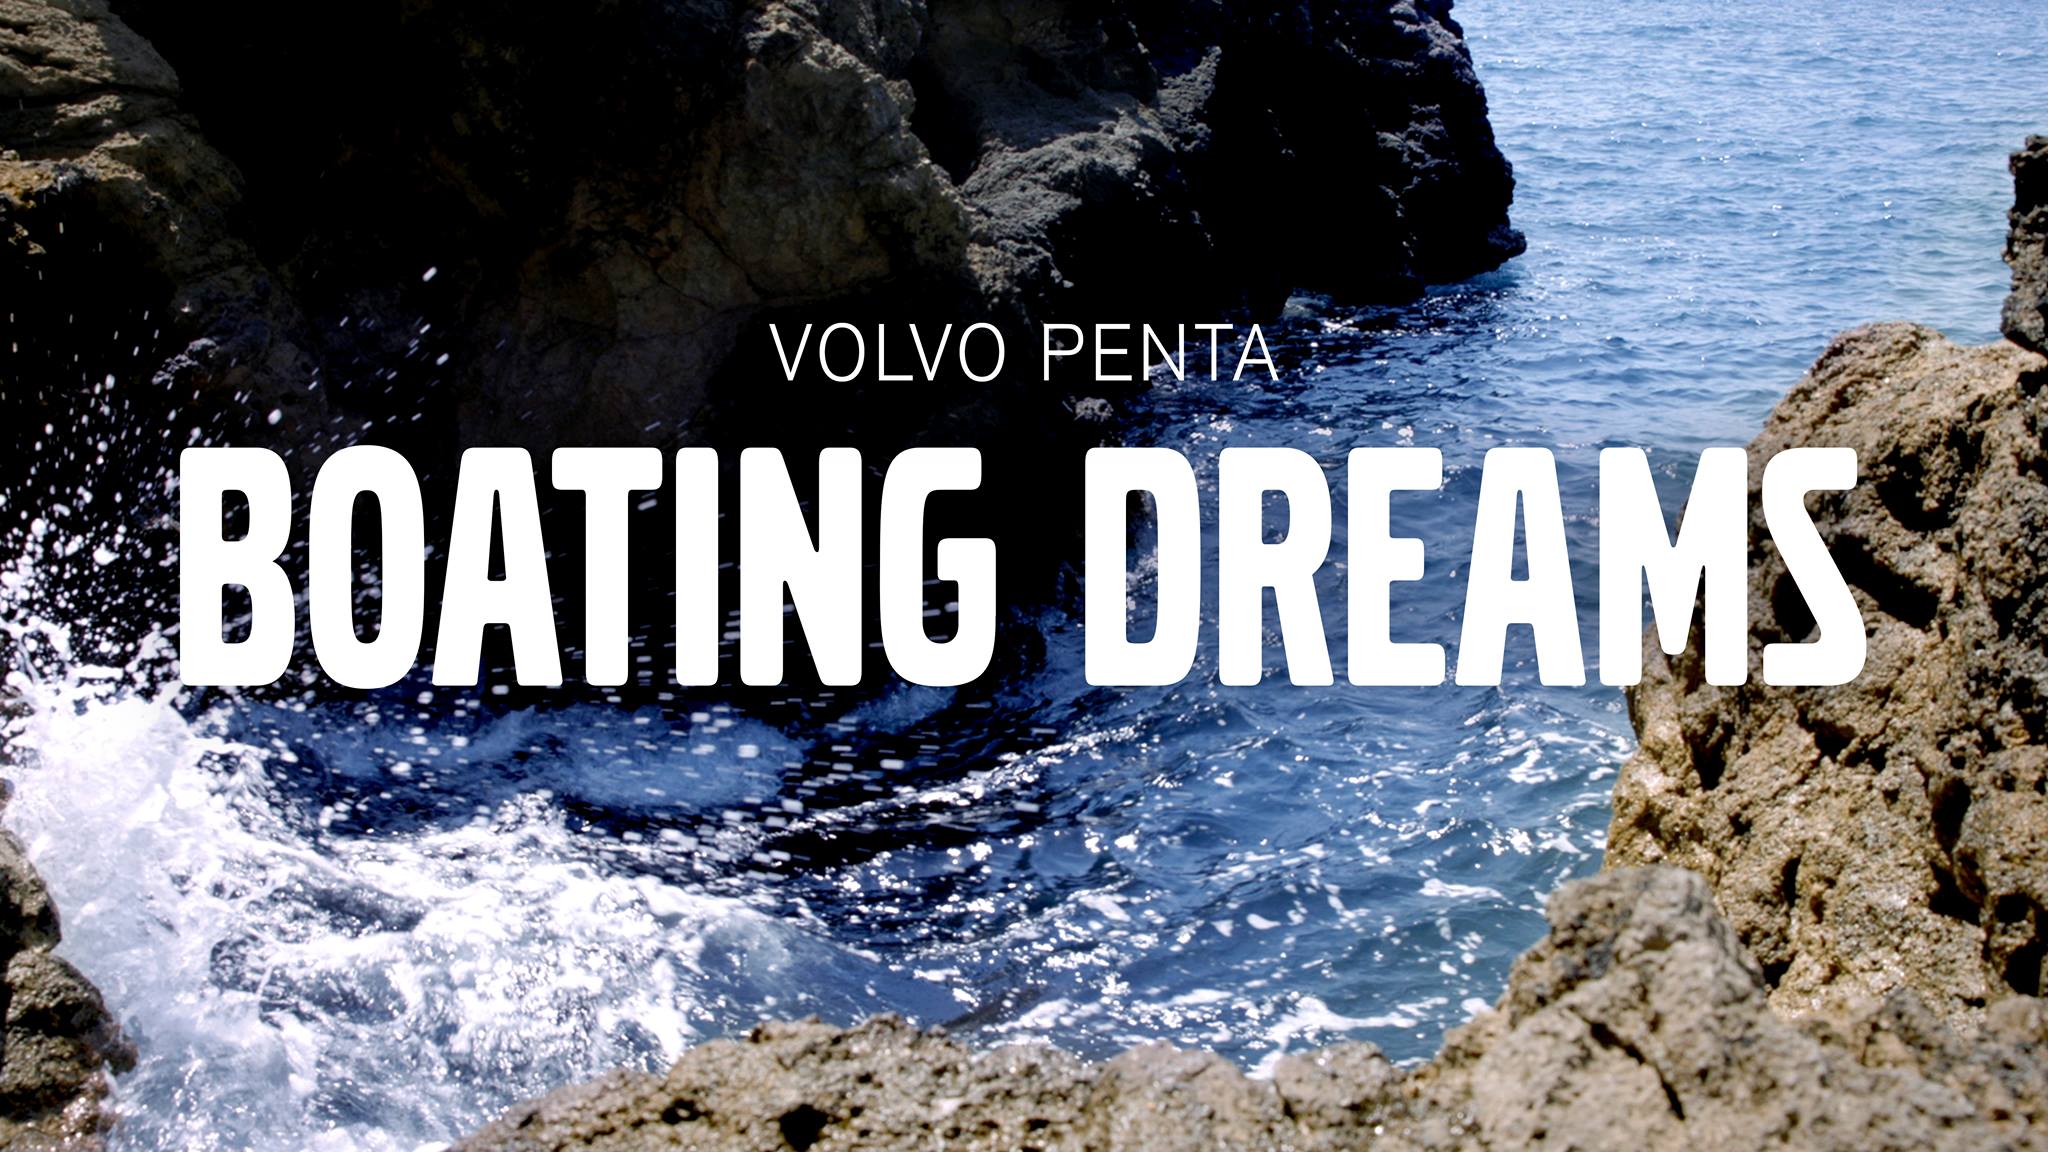 The Boating Dreams serien bliver lanceret online. Foto: Volvo Penta